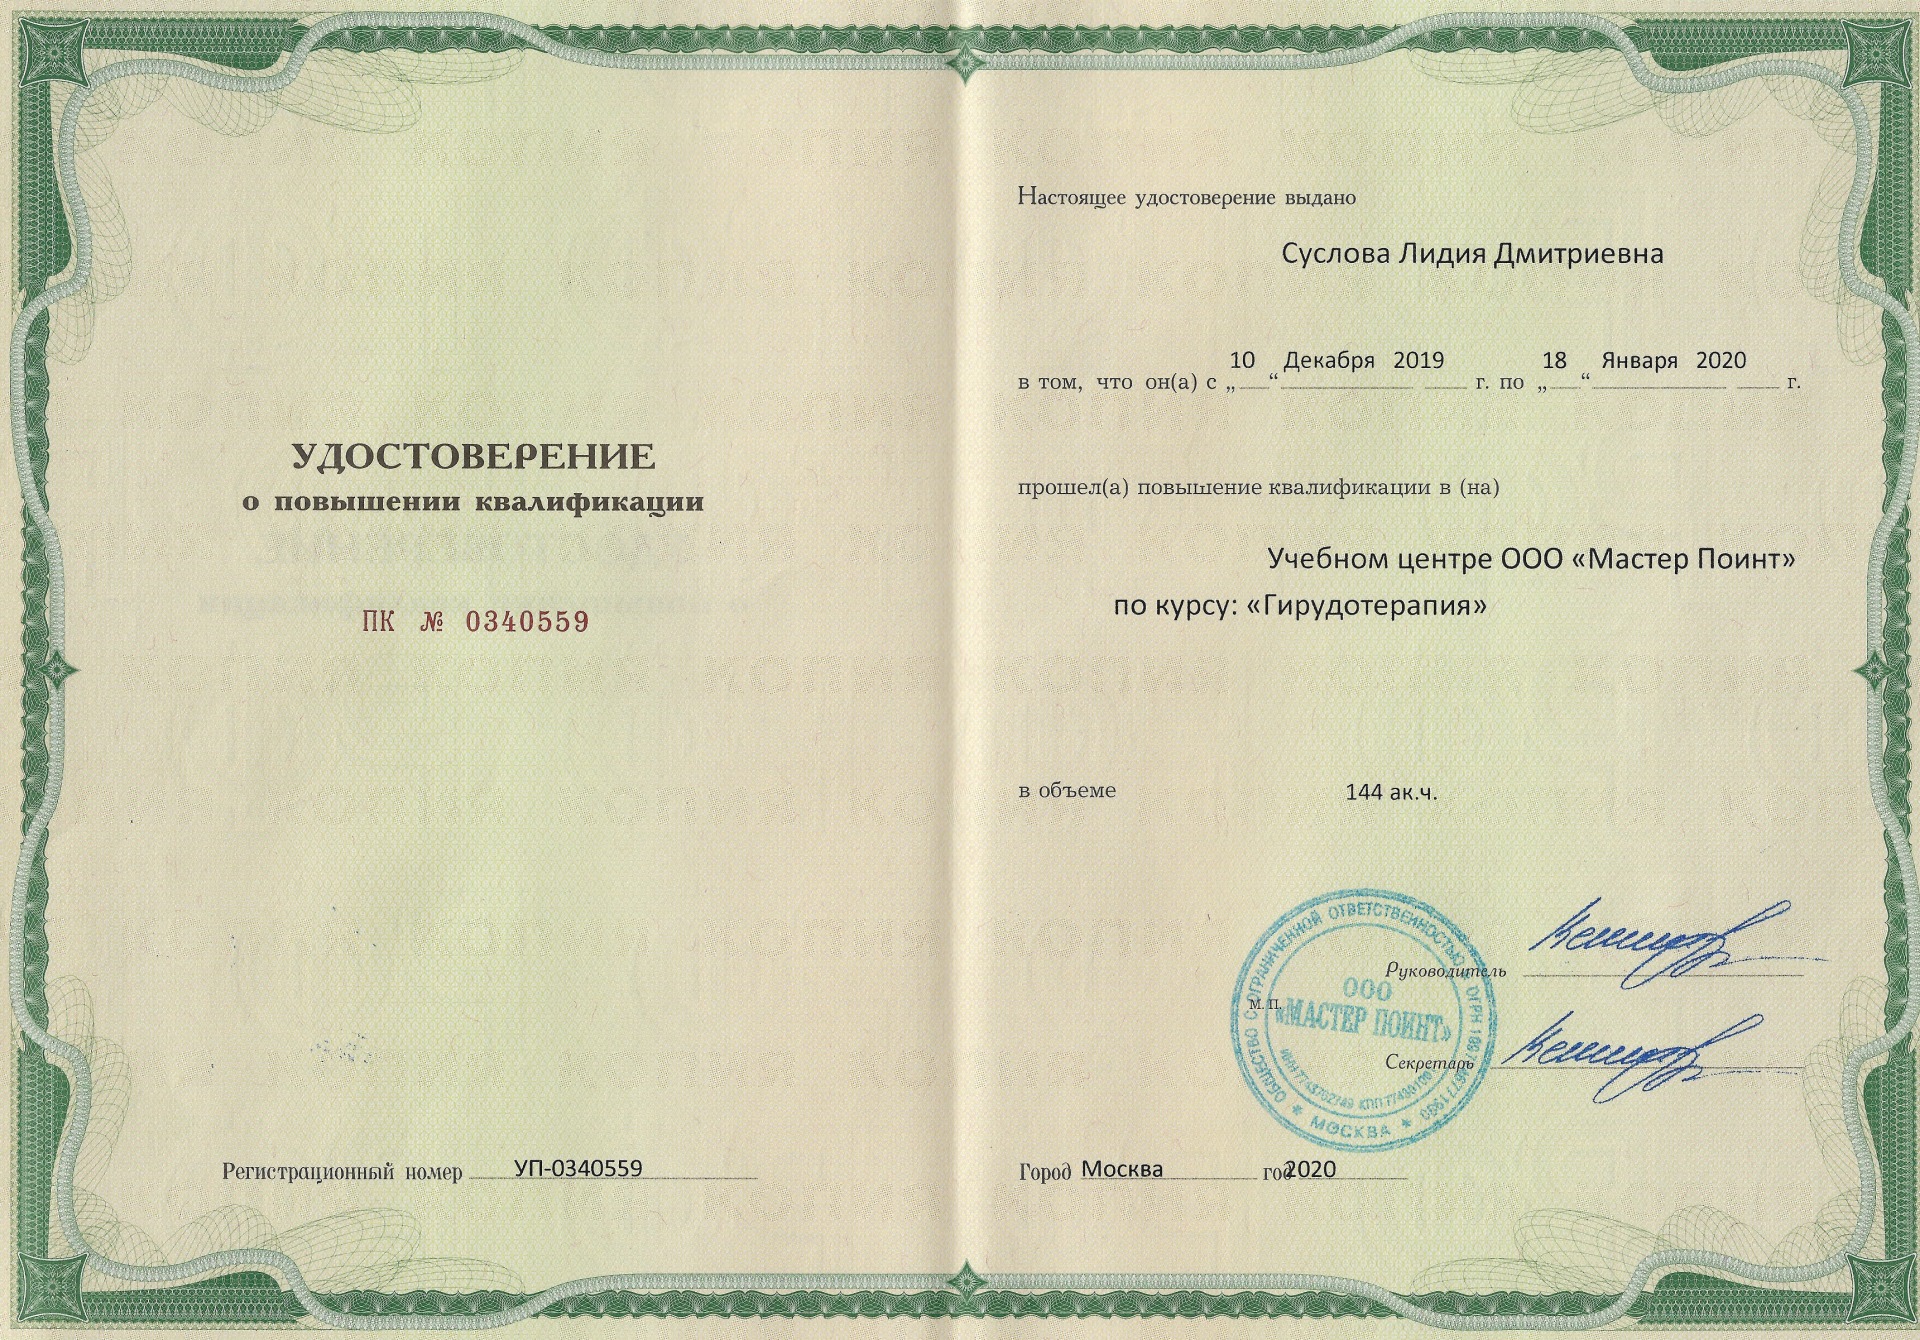 сертификат гирудотерапия 144